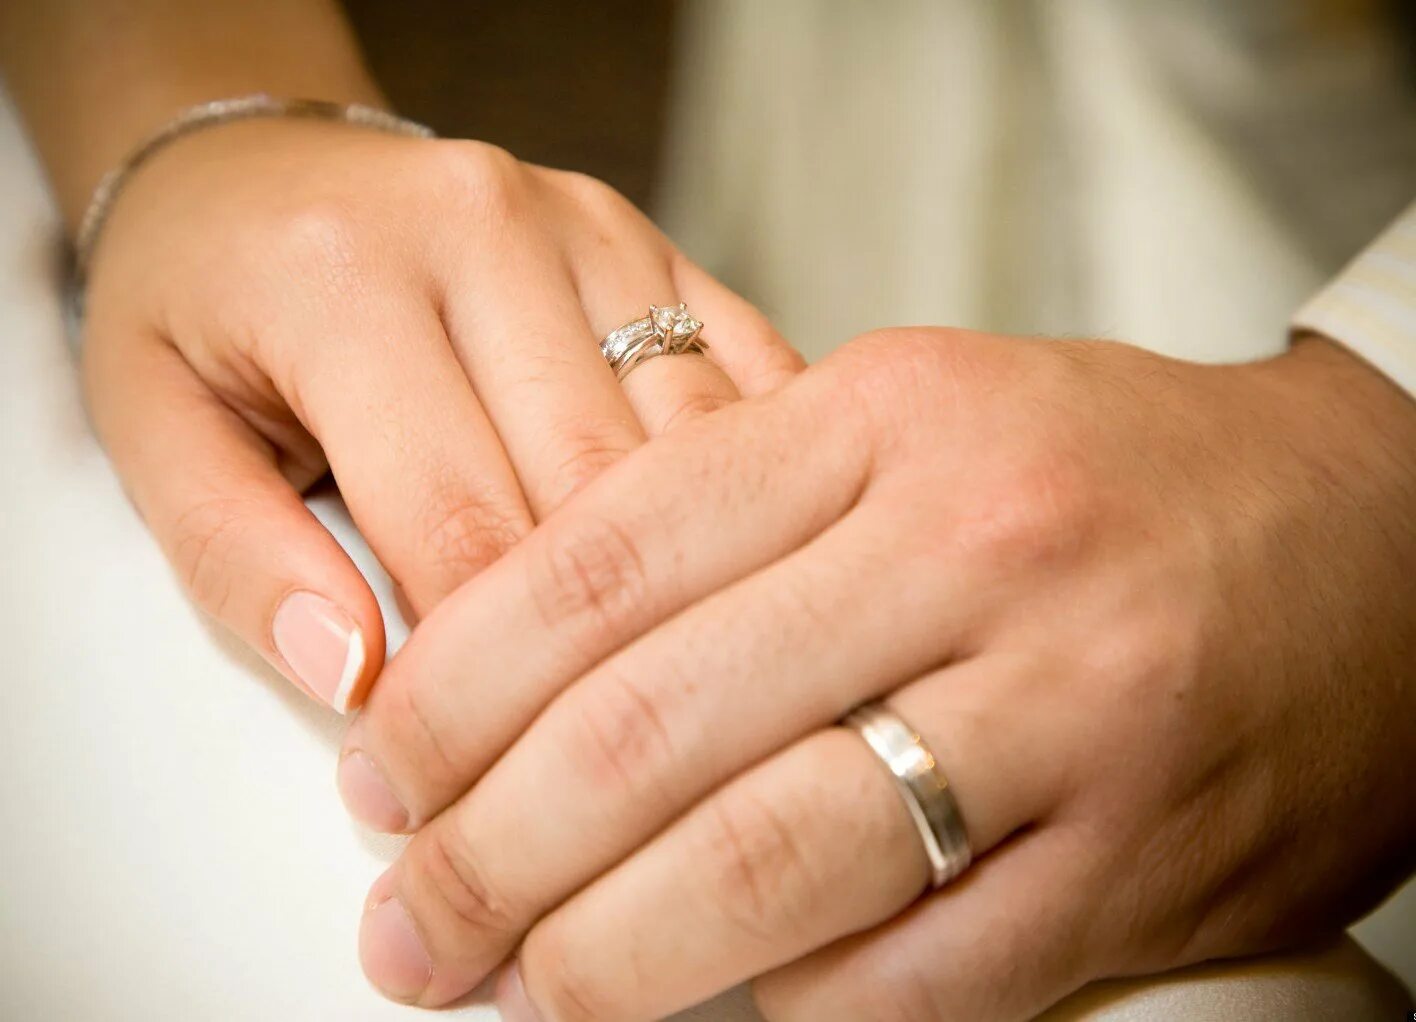 Обручальное кольцо на пальце. Пуки с обручальными кольцами. Свадебные кольца на пальцах. Обручальные кольца на руках. Видеть обручальное кольцо на пальце во сне